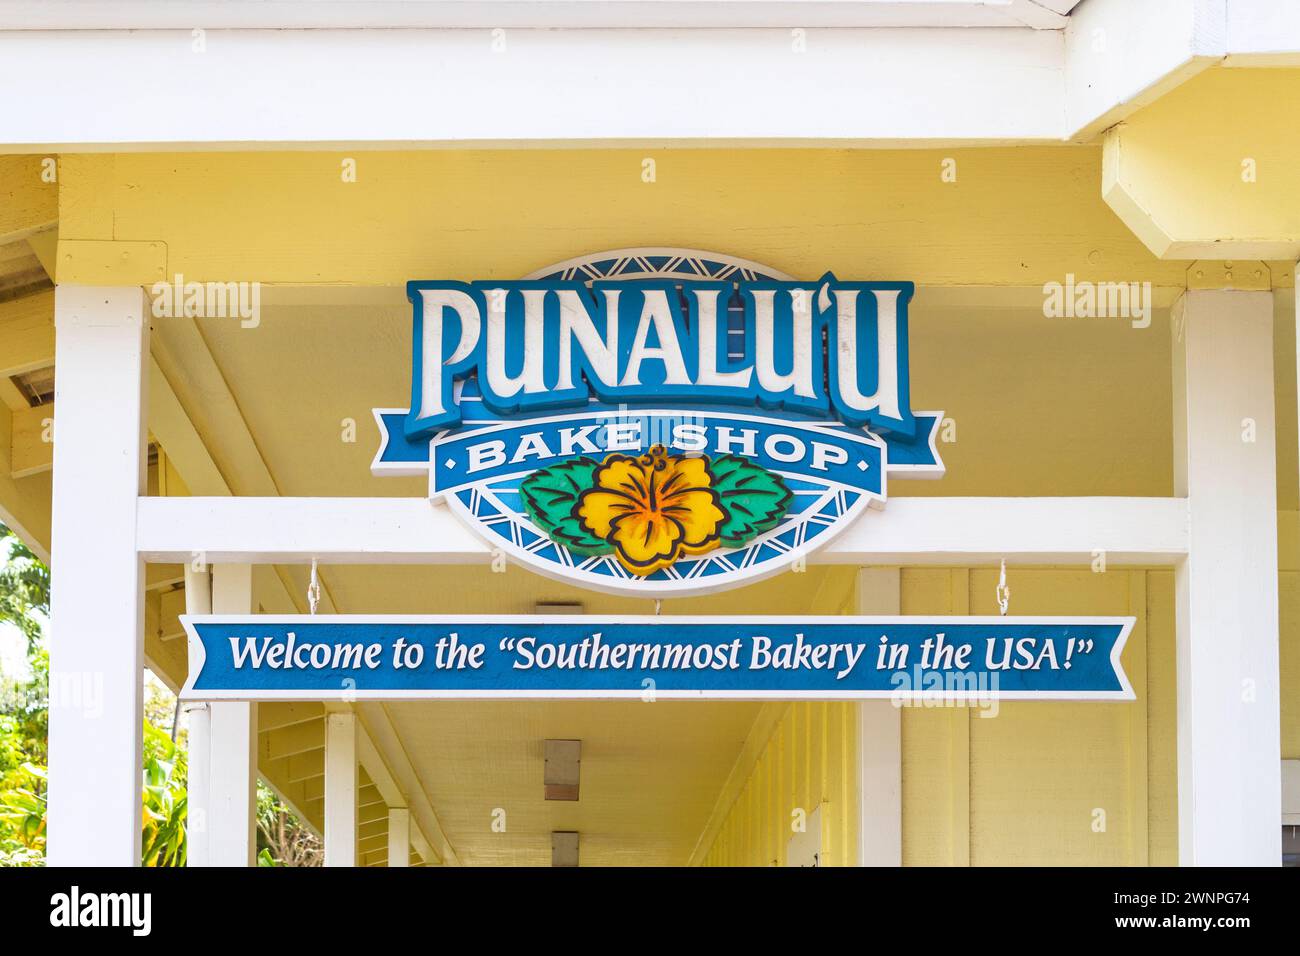 Farbenfrohes Schild für den Punalu'u Bake Shop, die südlichste Bäckerei der USA, befindet sich in Naalehu, Hawaii und ist ein beliebter Touristenort. Stockfoto